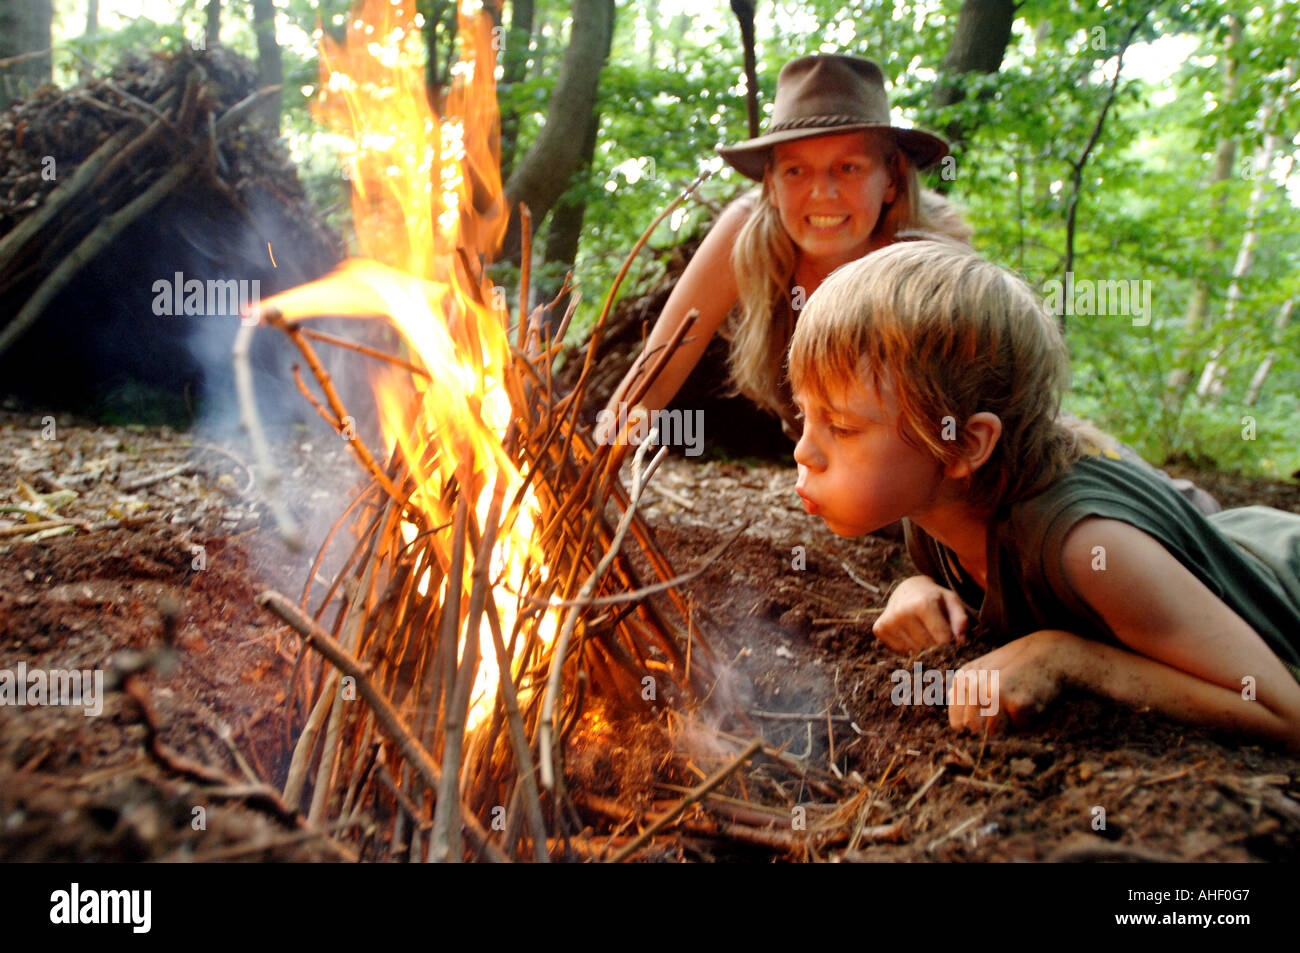 Kleiner Junge in Baseball-Mütze weht einen Lagerfeuer in das Leben in einem Waldgebiet clearing als Frau blickt auf zustimmend Stockfoto